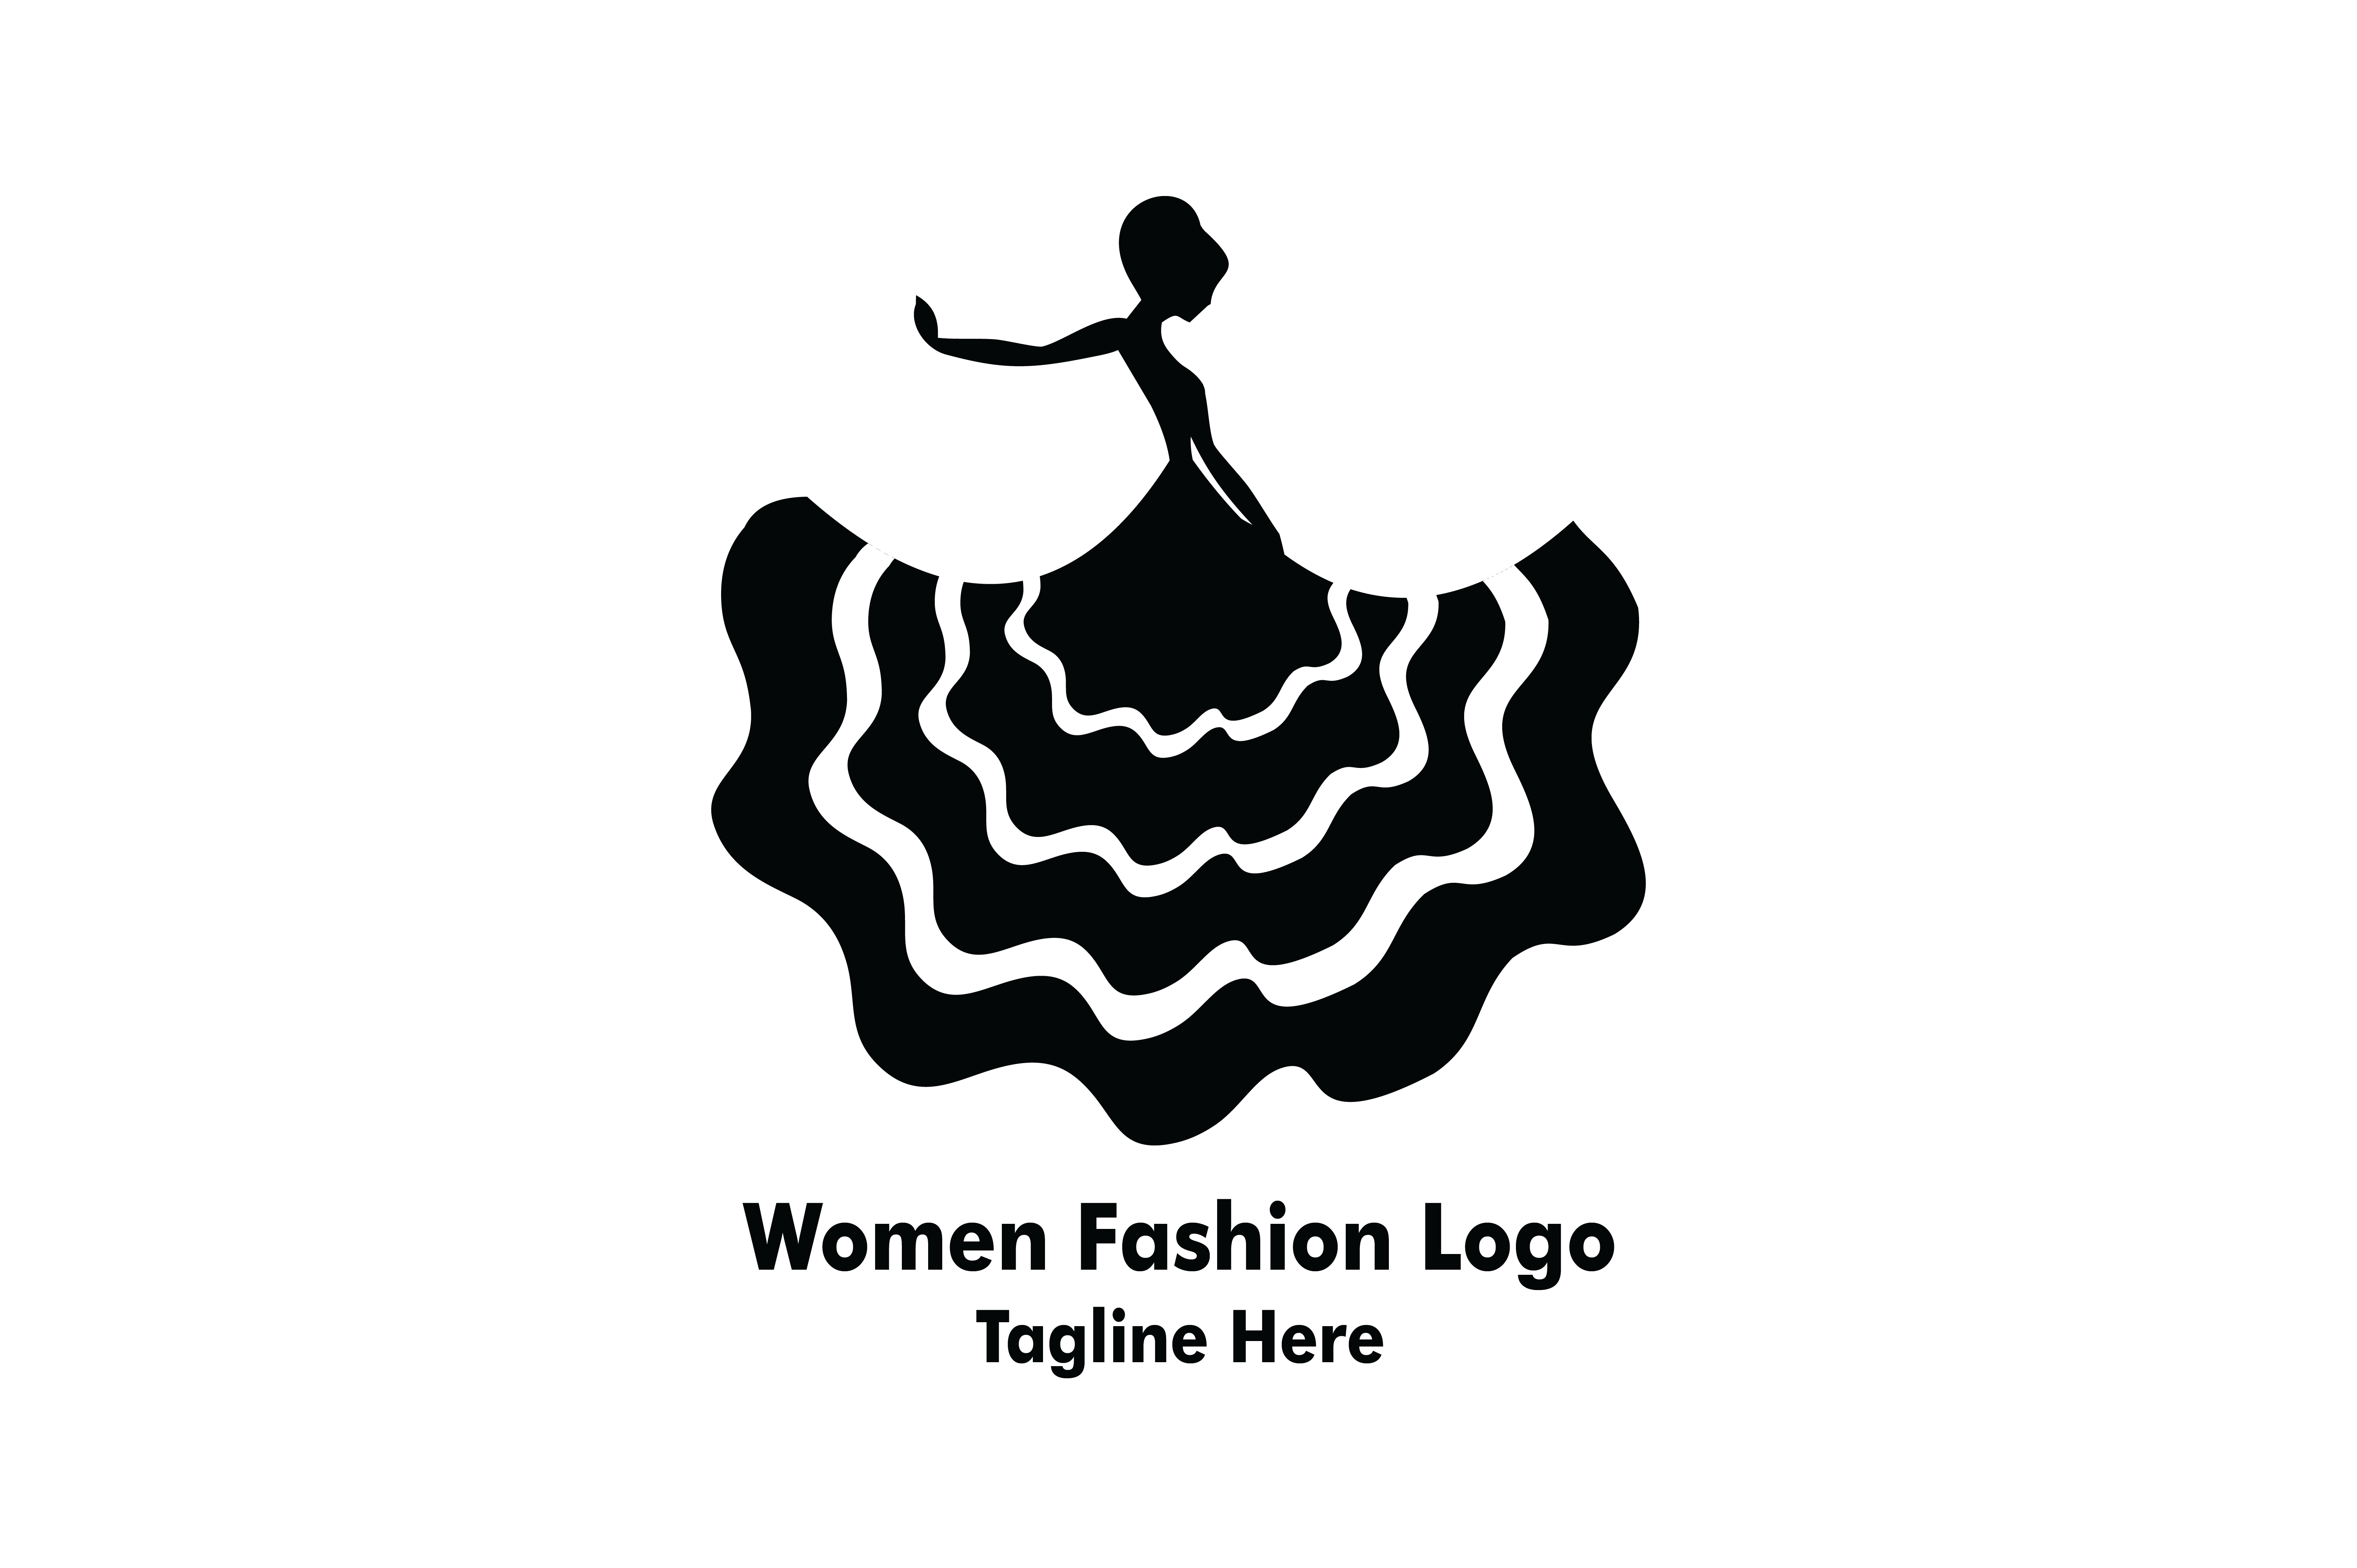 Women Beauty Fashion Logo Graphic by Yuhana Purwanti · Creative Fabrica